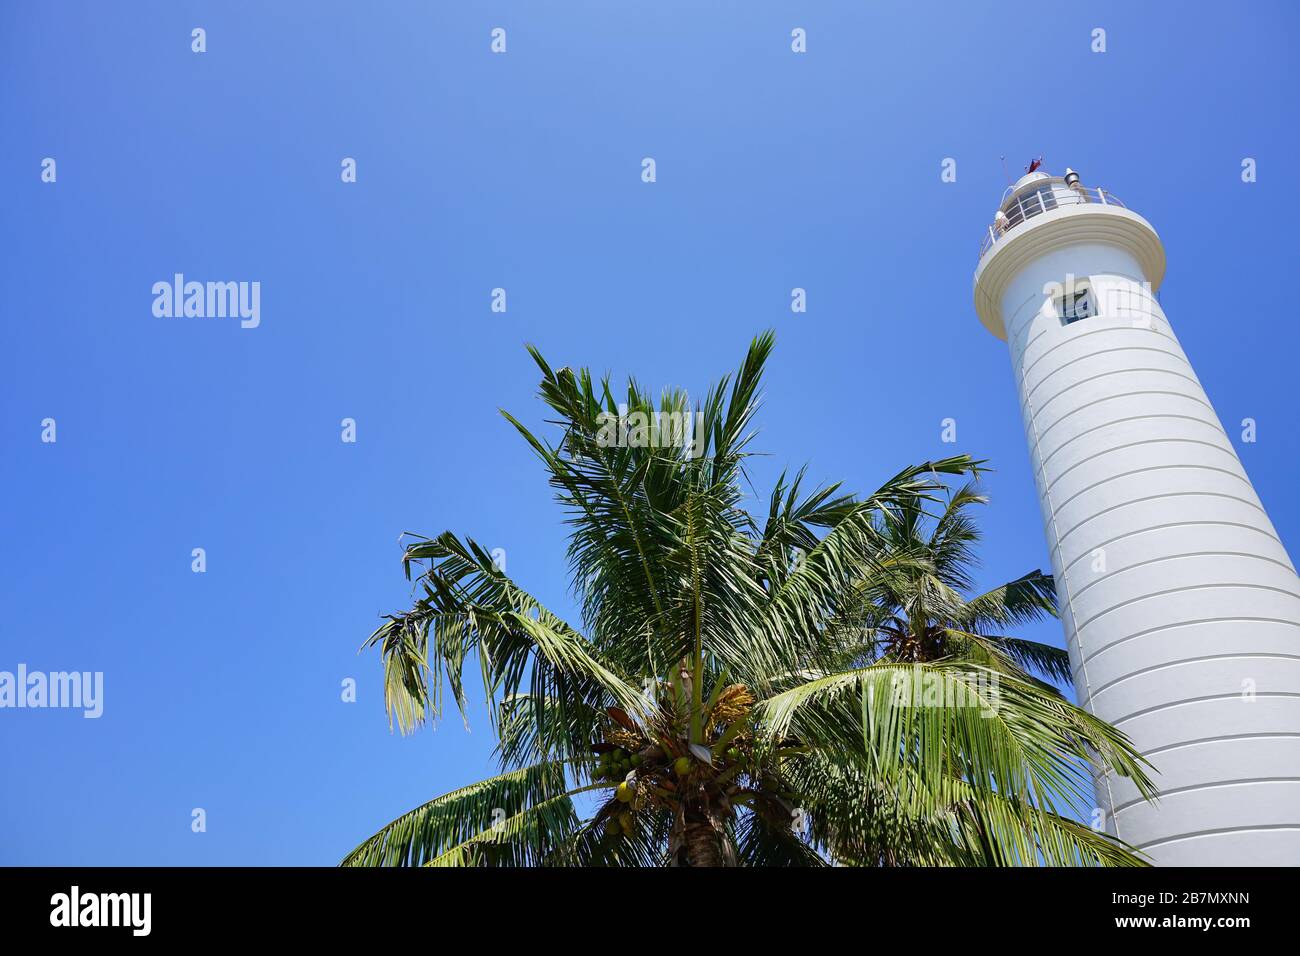 Un bel vecchio faro bianco a Galle, un cielo blu e una corona di palme da cocco. La bellezza dell'architettura coloniale portoghese in Sri Lanka. Foto Stock